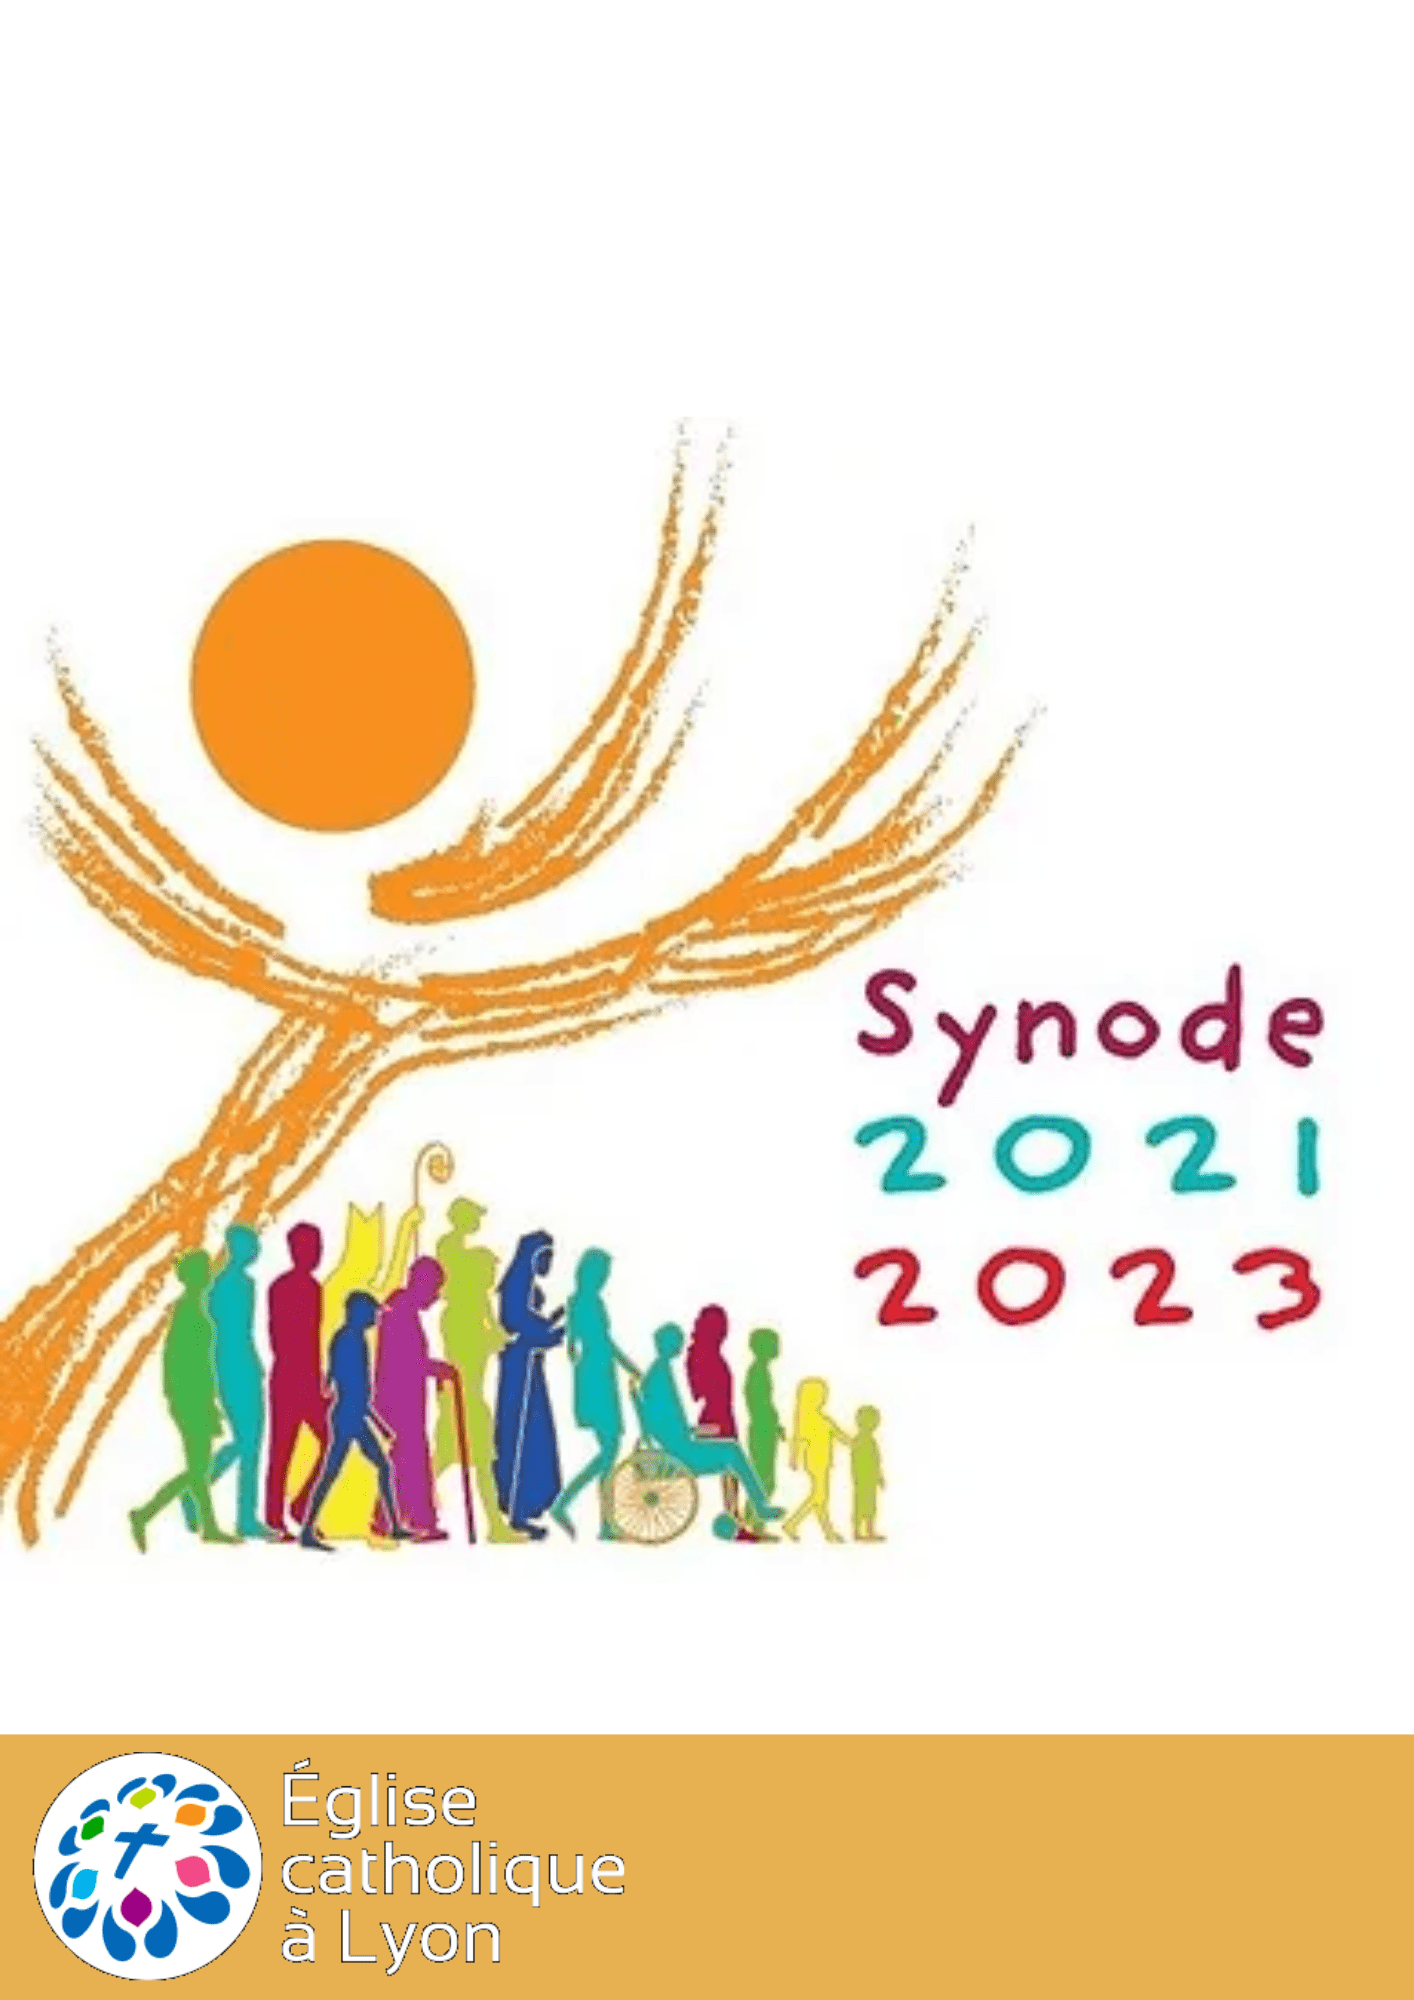 Synode 2021-2023 : contribution du diocèse de Lyon à l’Assemblée continentale